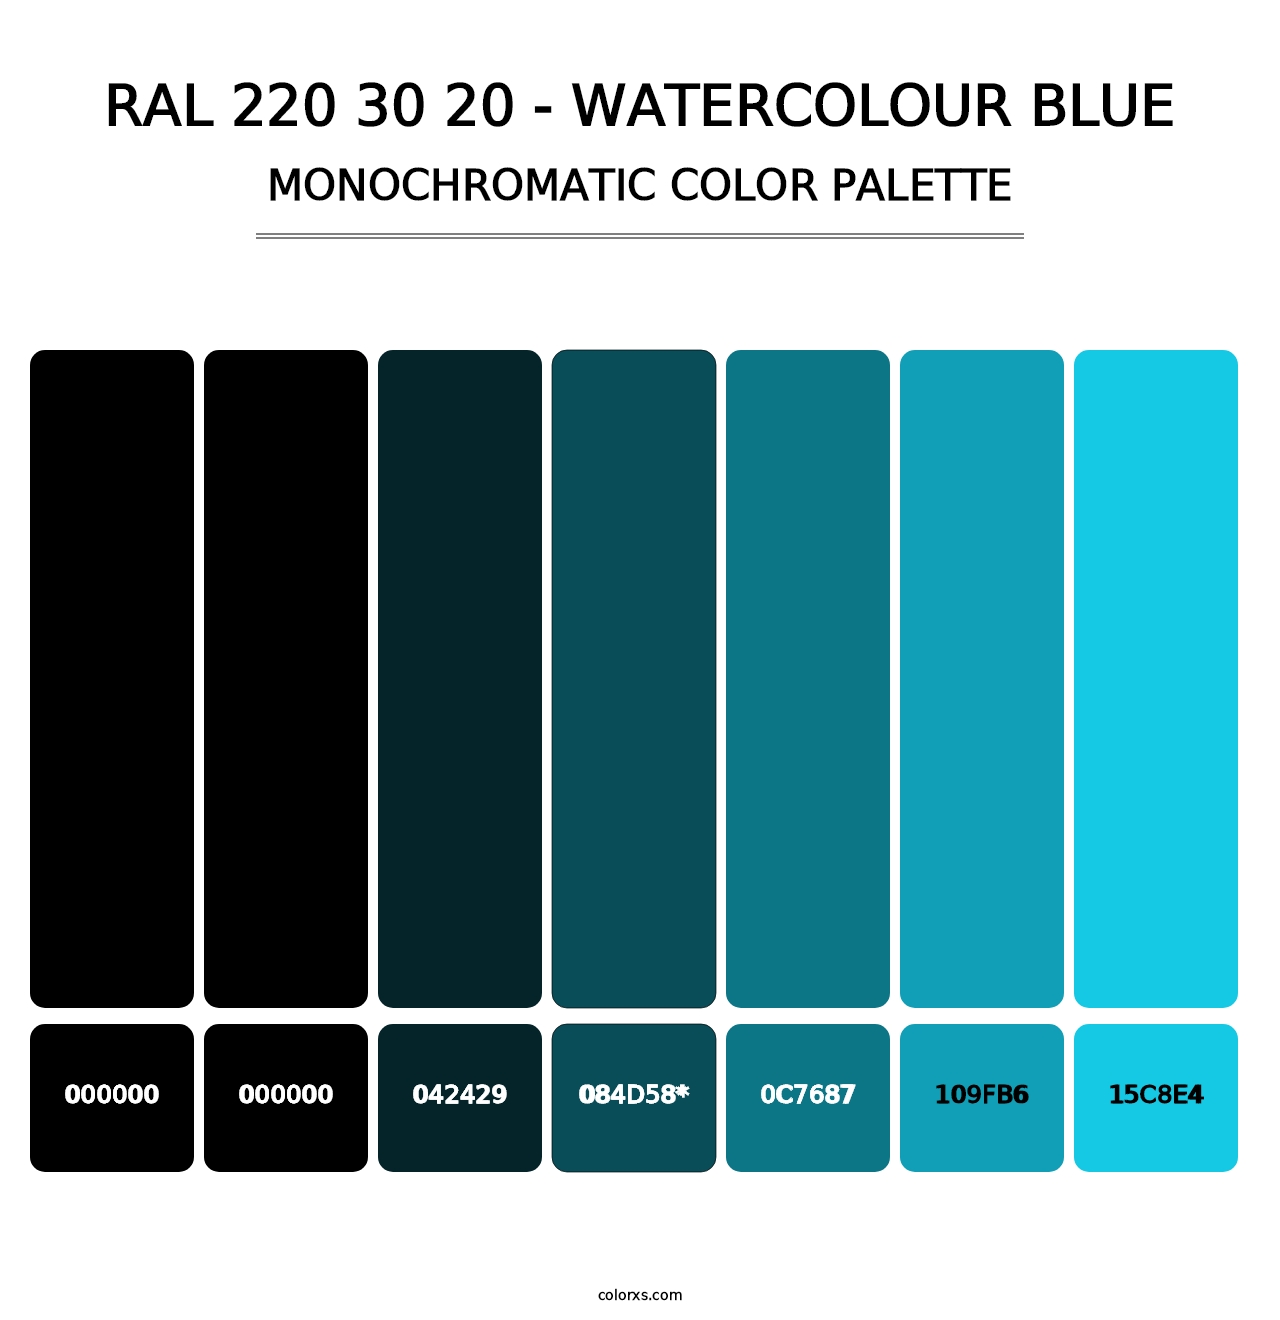 RAL 220 30 20 - Watercolour Blue - Monochromatic Color Palette